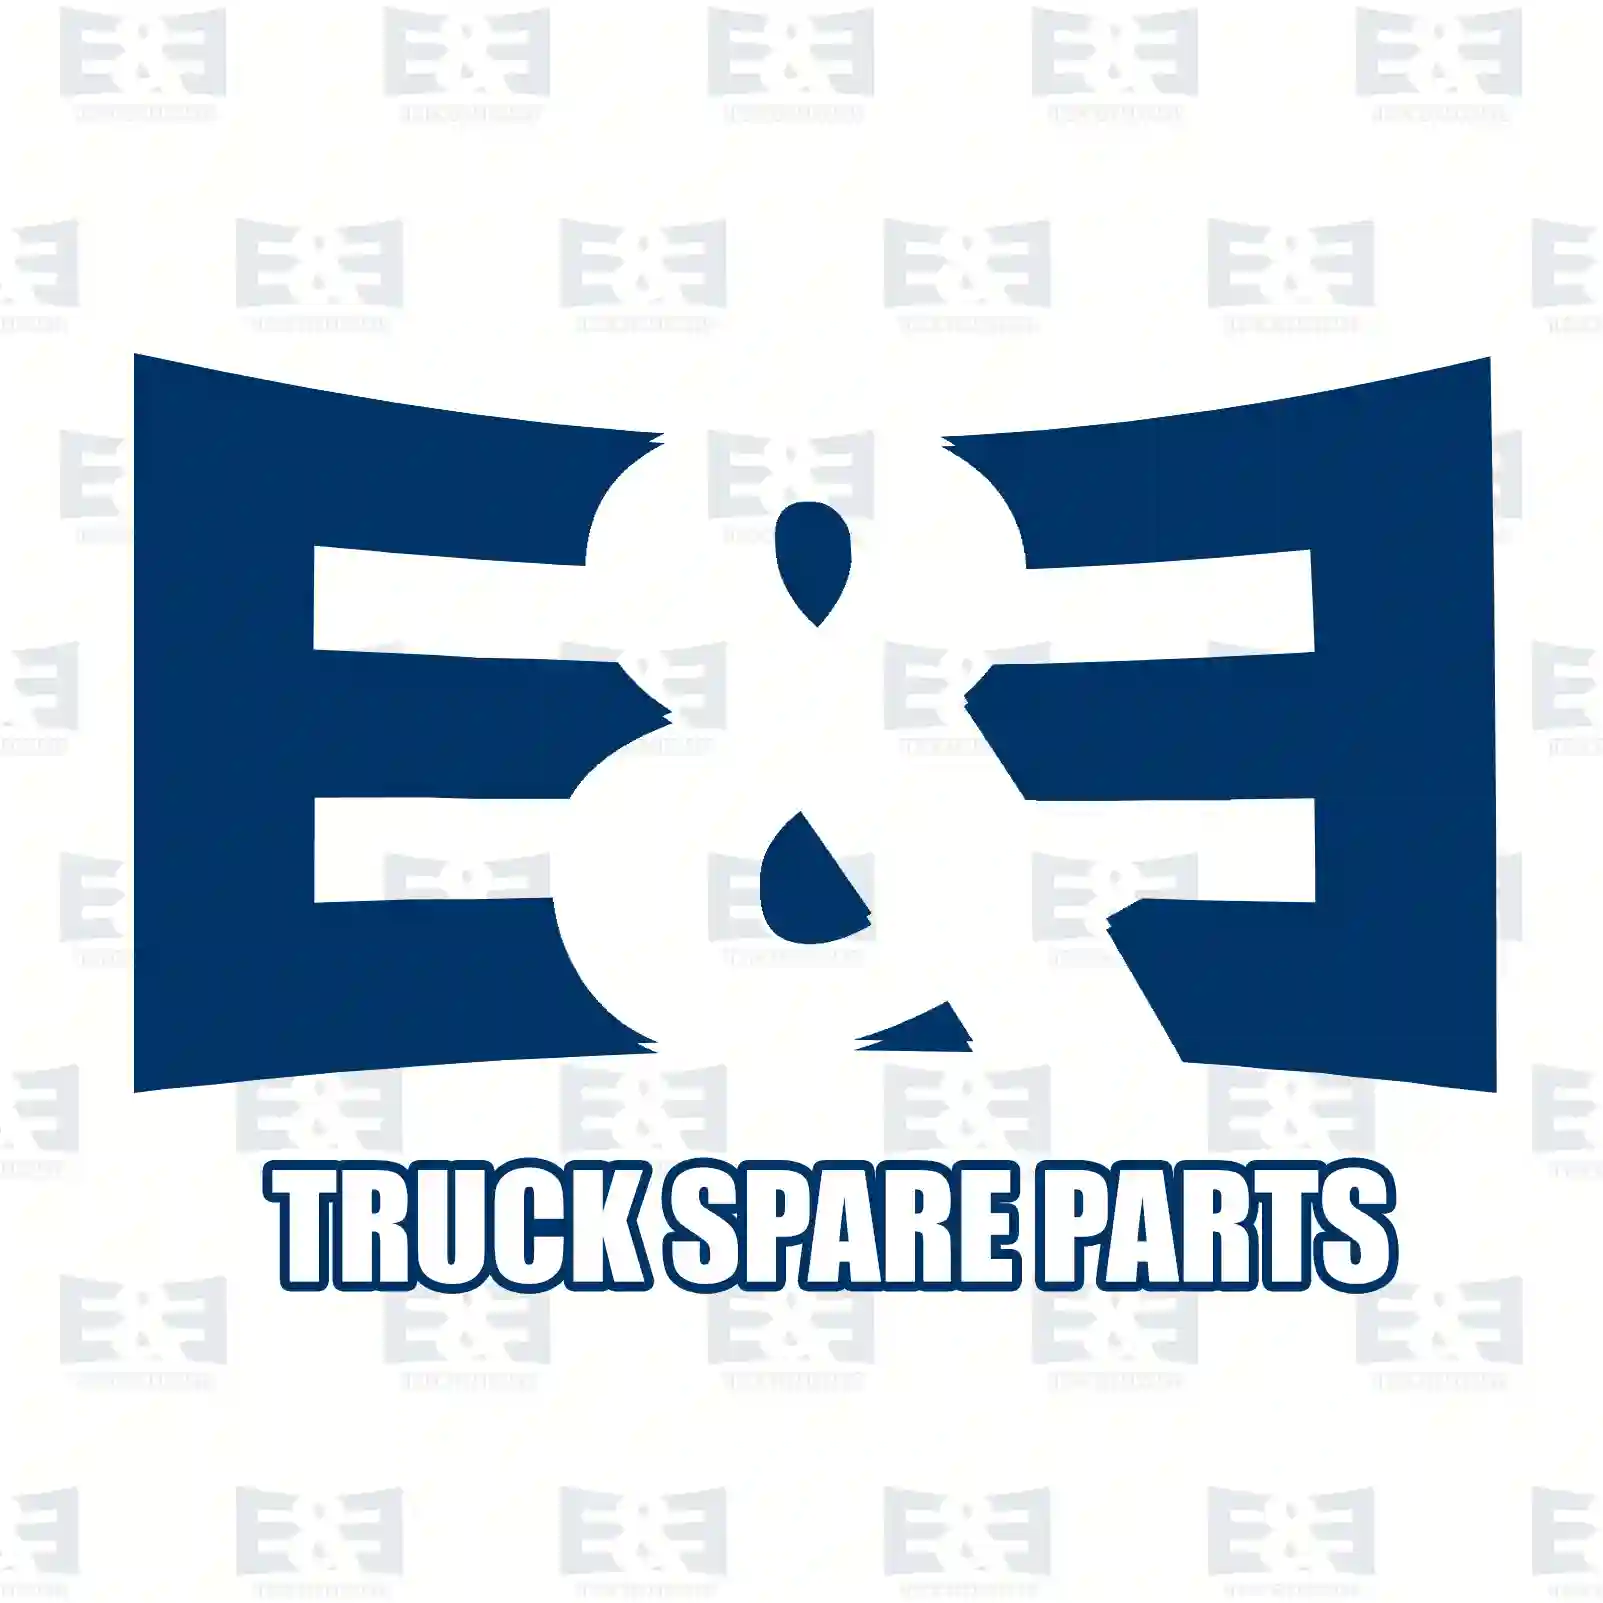 Cabin corner, right, 2E2292456, 5010225045, 5010301273, 5010445662 ||  2E2292456 E&E Truck Spare Parts | Truck Spare Parts, Auotomotive Spare Parts Cabin corner, right, 2E2292456, 5010225045, 5010301273, 5010445662 ||  2E2292456 E&E Truck Spare Parts | Truck Spare Parts, Auotomotive Spare Parts